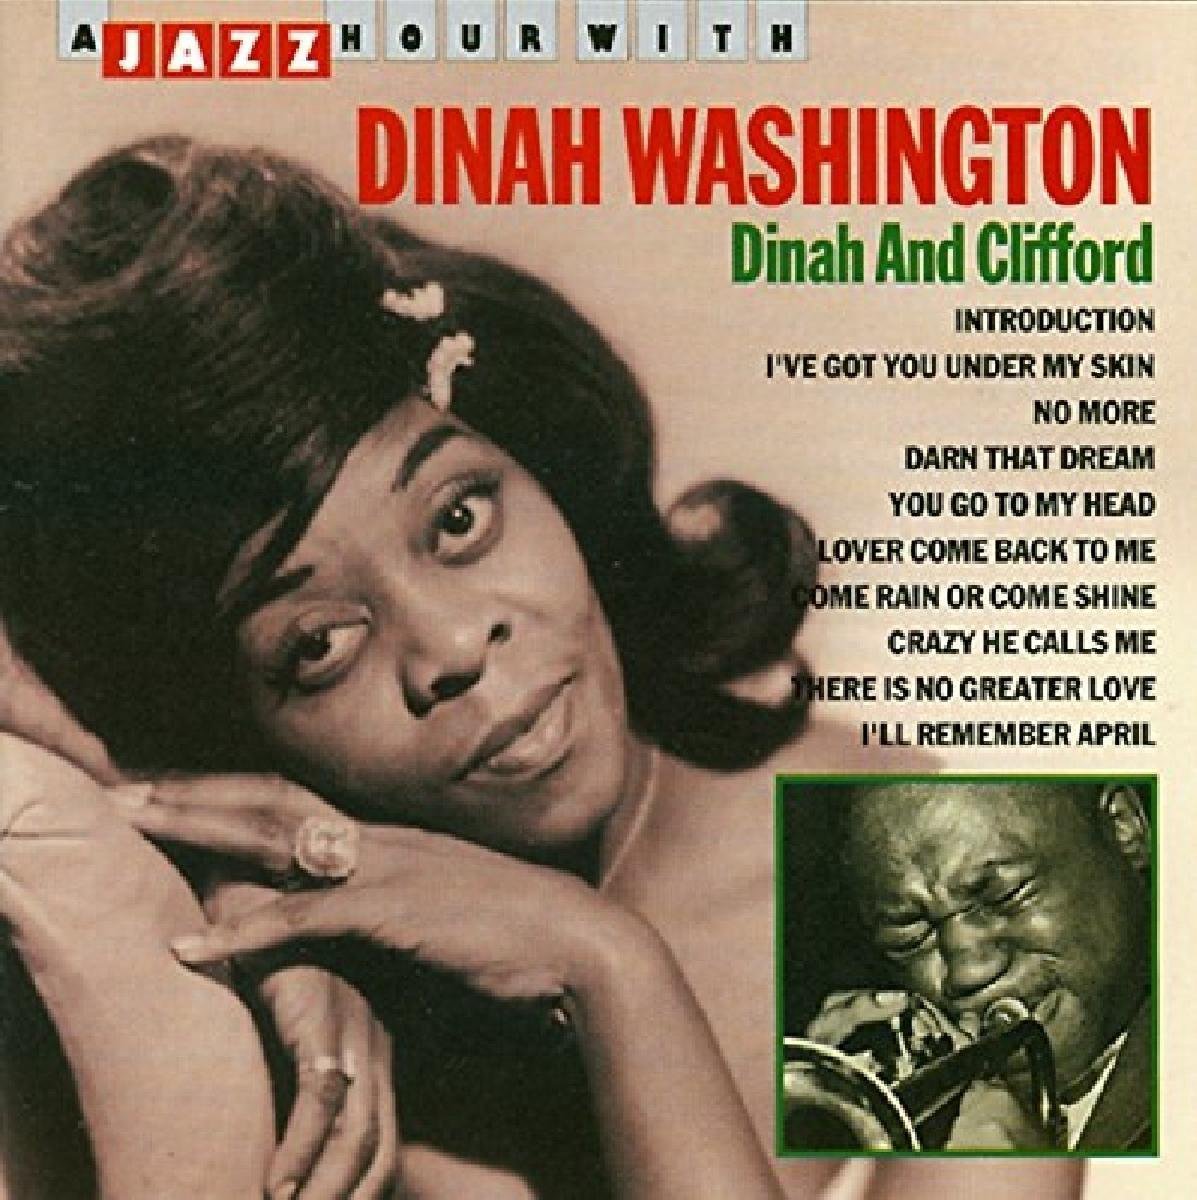 Jazz Hour With Dinah Washington/Dinah And Clifford - Dinah Washington